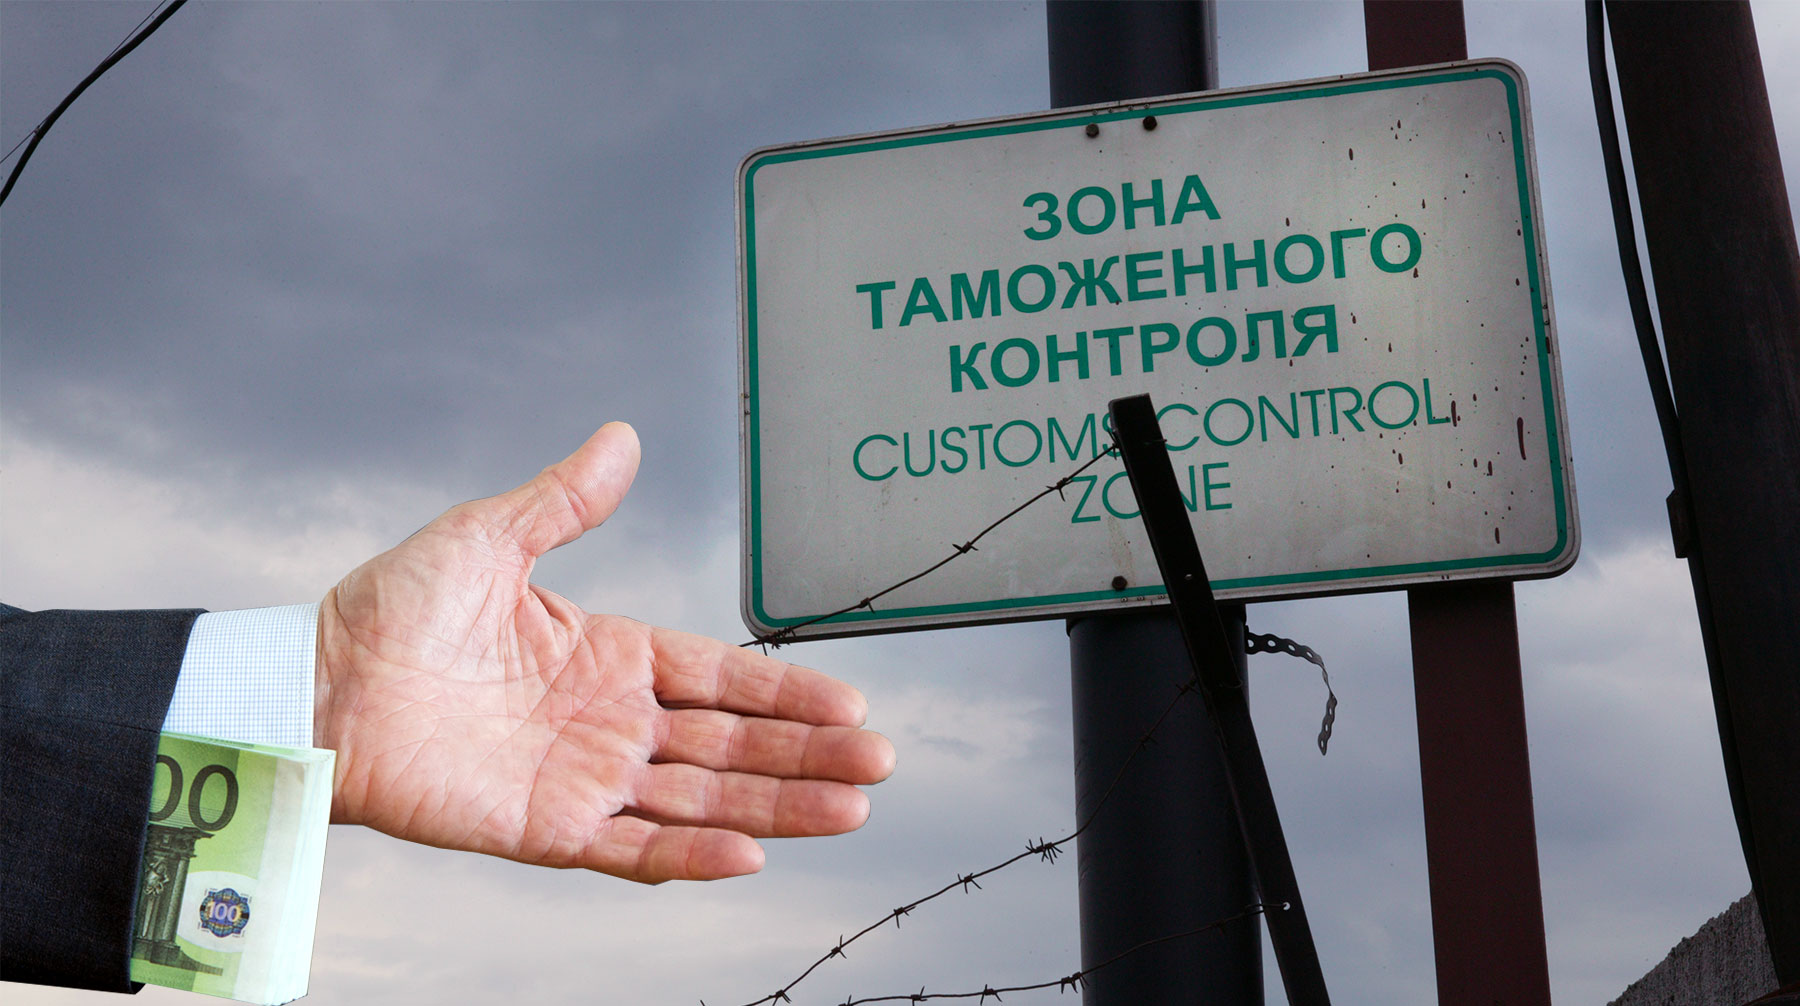 Чиновник получил 347 тысяч рублей за отмену проверок для товаров одной компании, считает следствие Коллаж: © Daily Storm